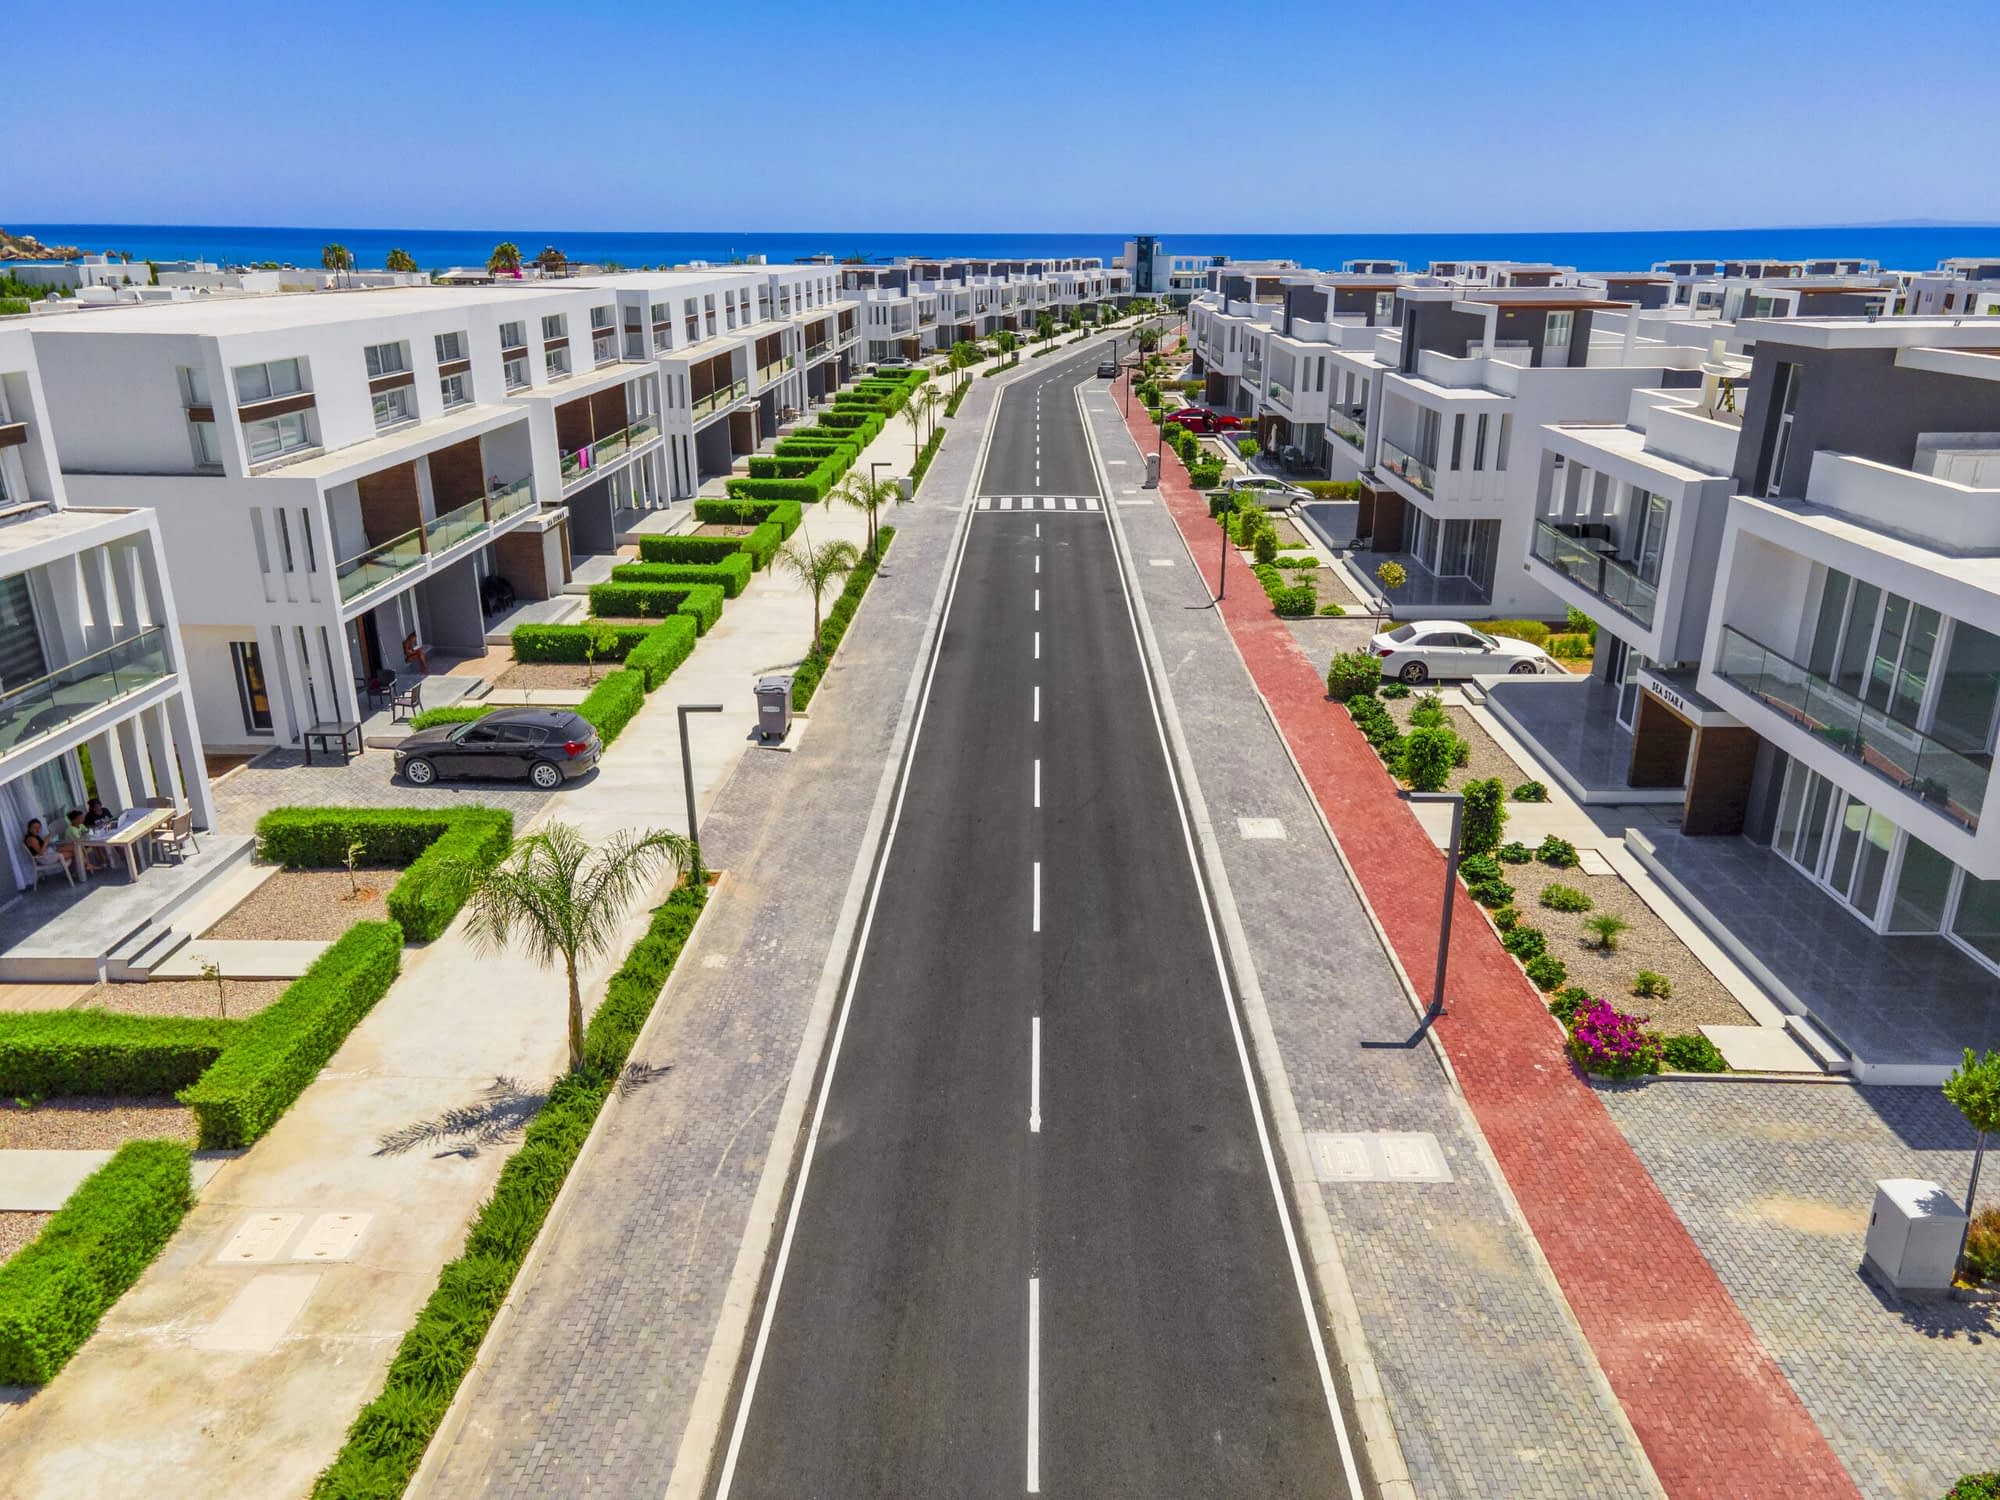 Immobilienmarkt in Nordzypern zu Investieren